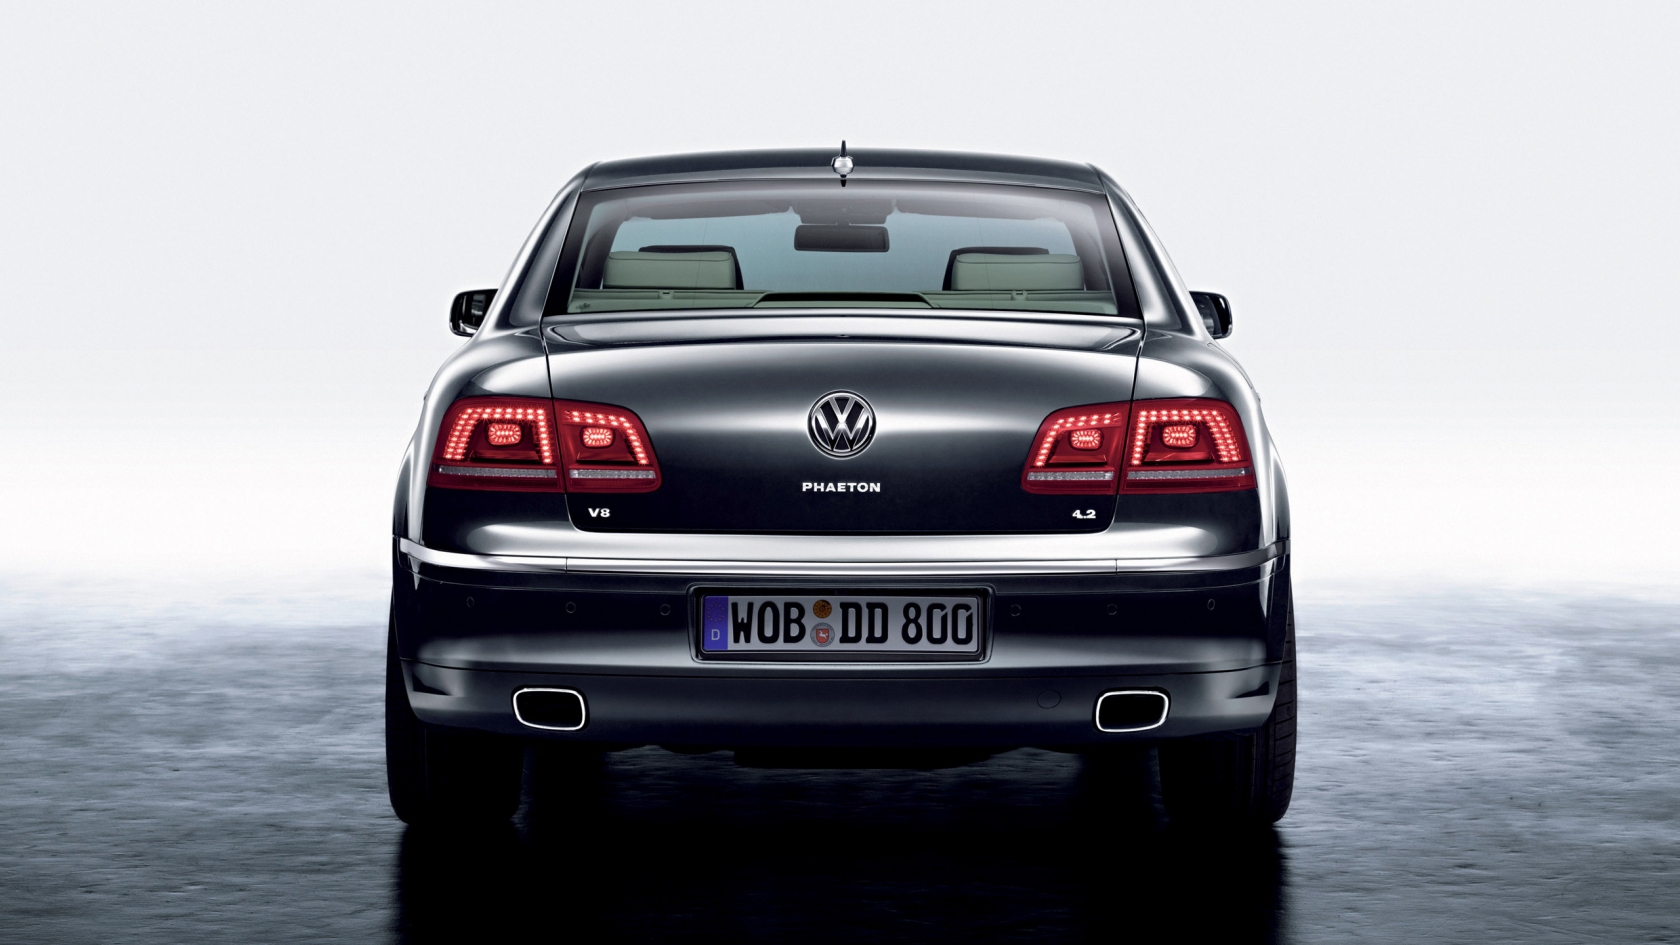 Volkswagen Phaeton Rear for 1680 x 945 HDTV resolution